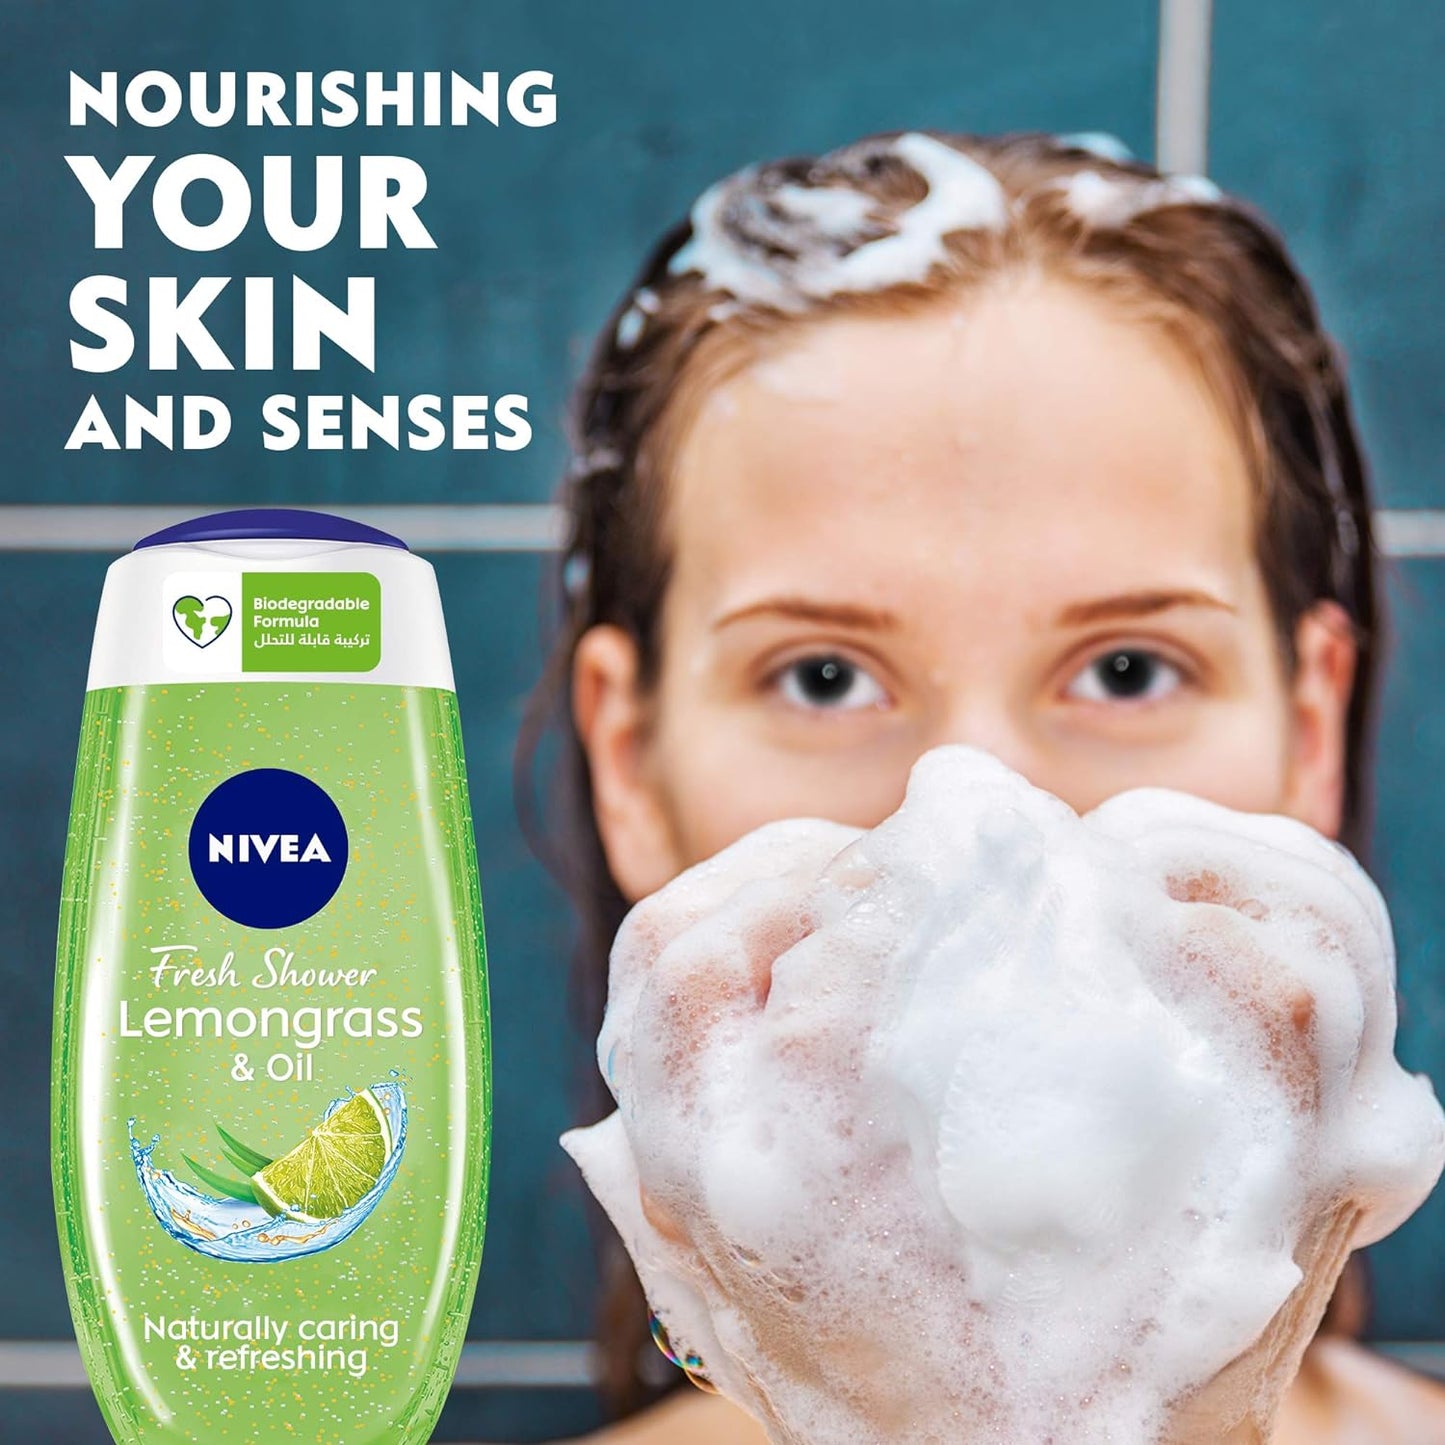 NIVEA Shower Gel Body Wash, Lemongrass & Oil Caring Oil Pearls Lemongrass Scent, 250ml